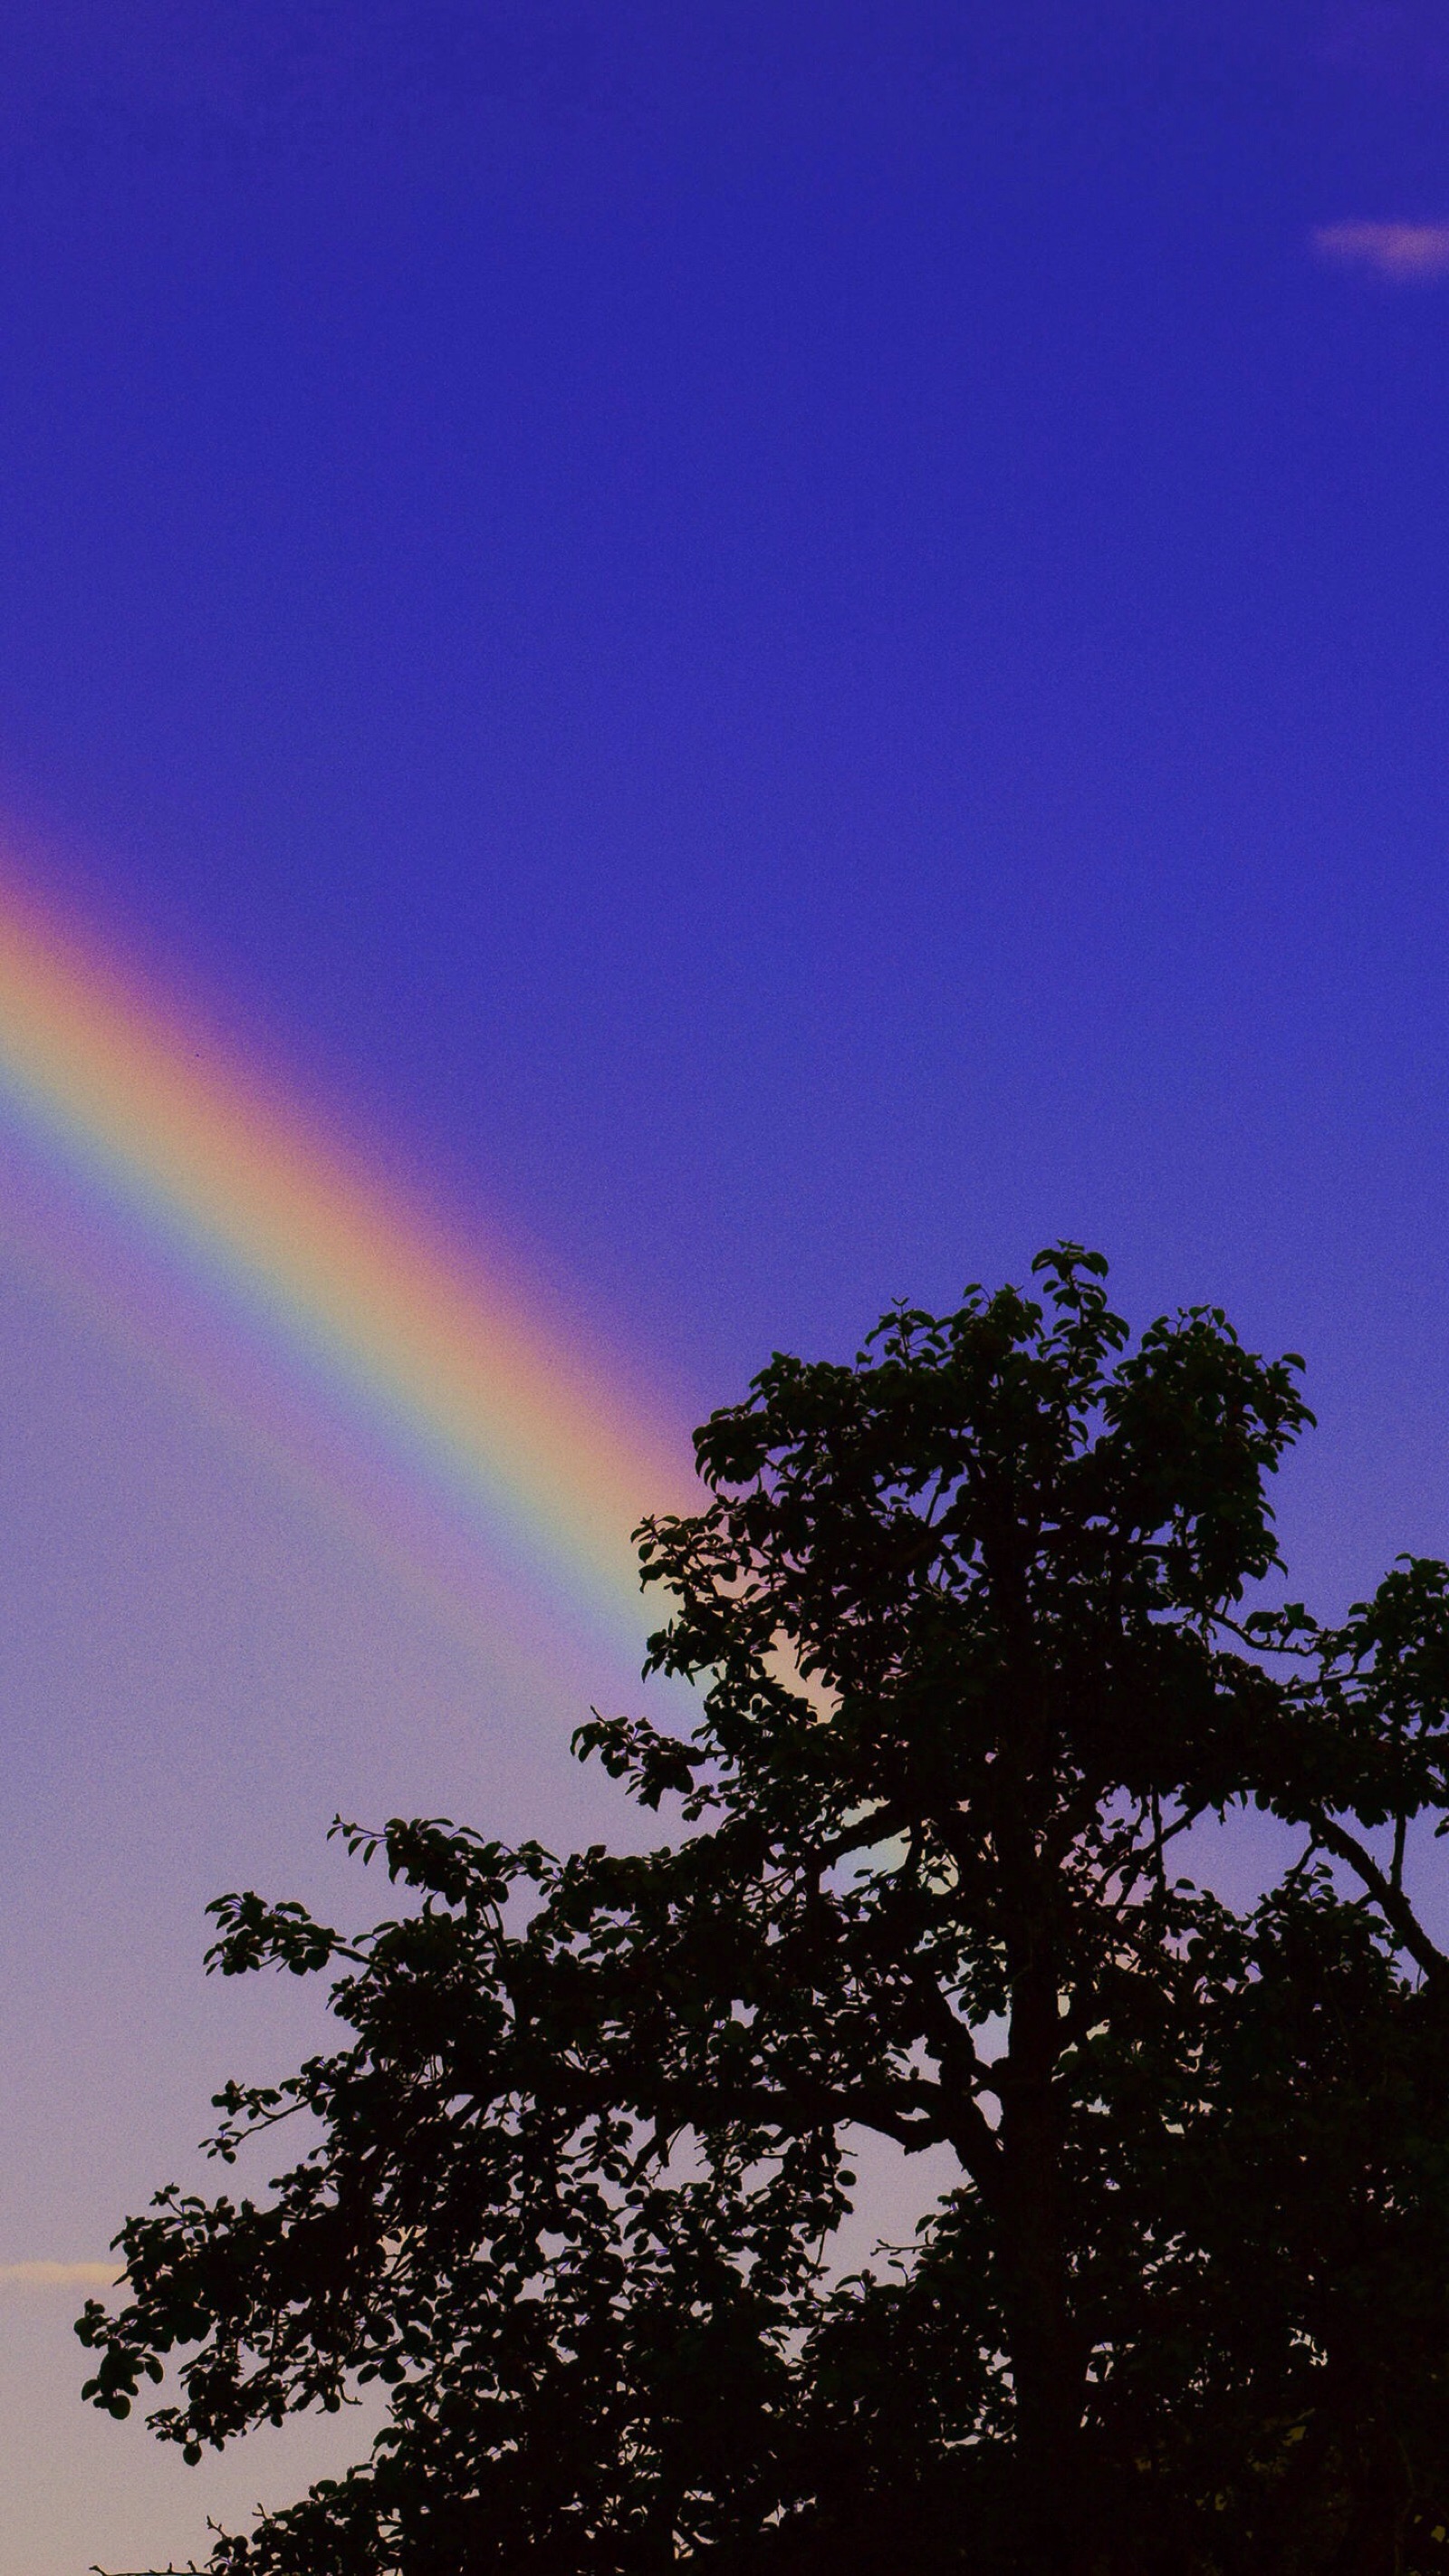 仙气彩虹背景图图片